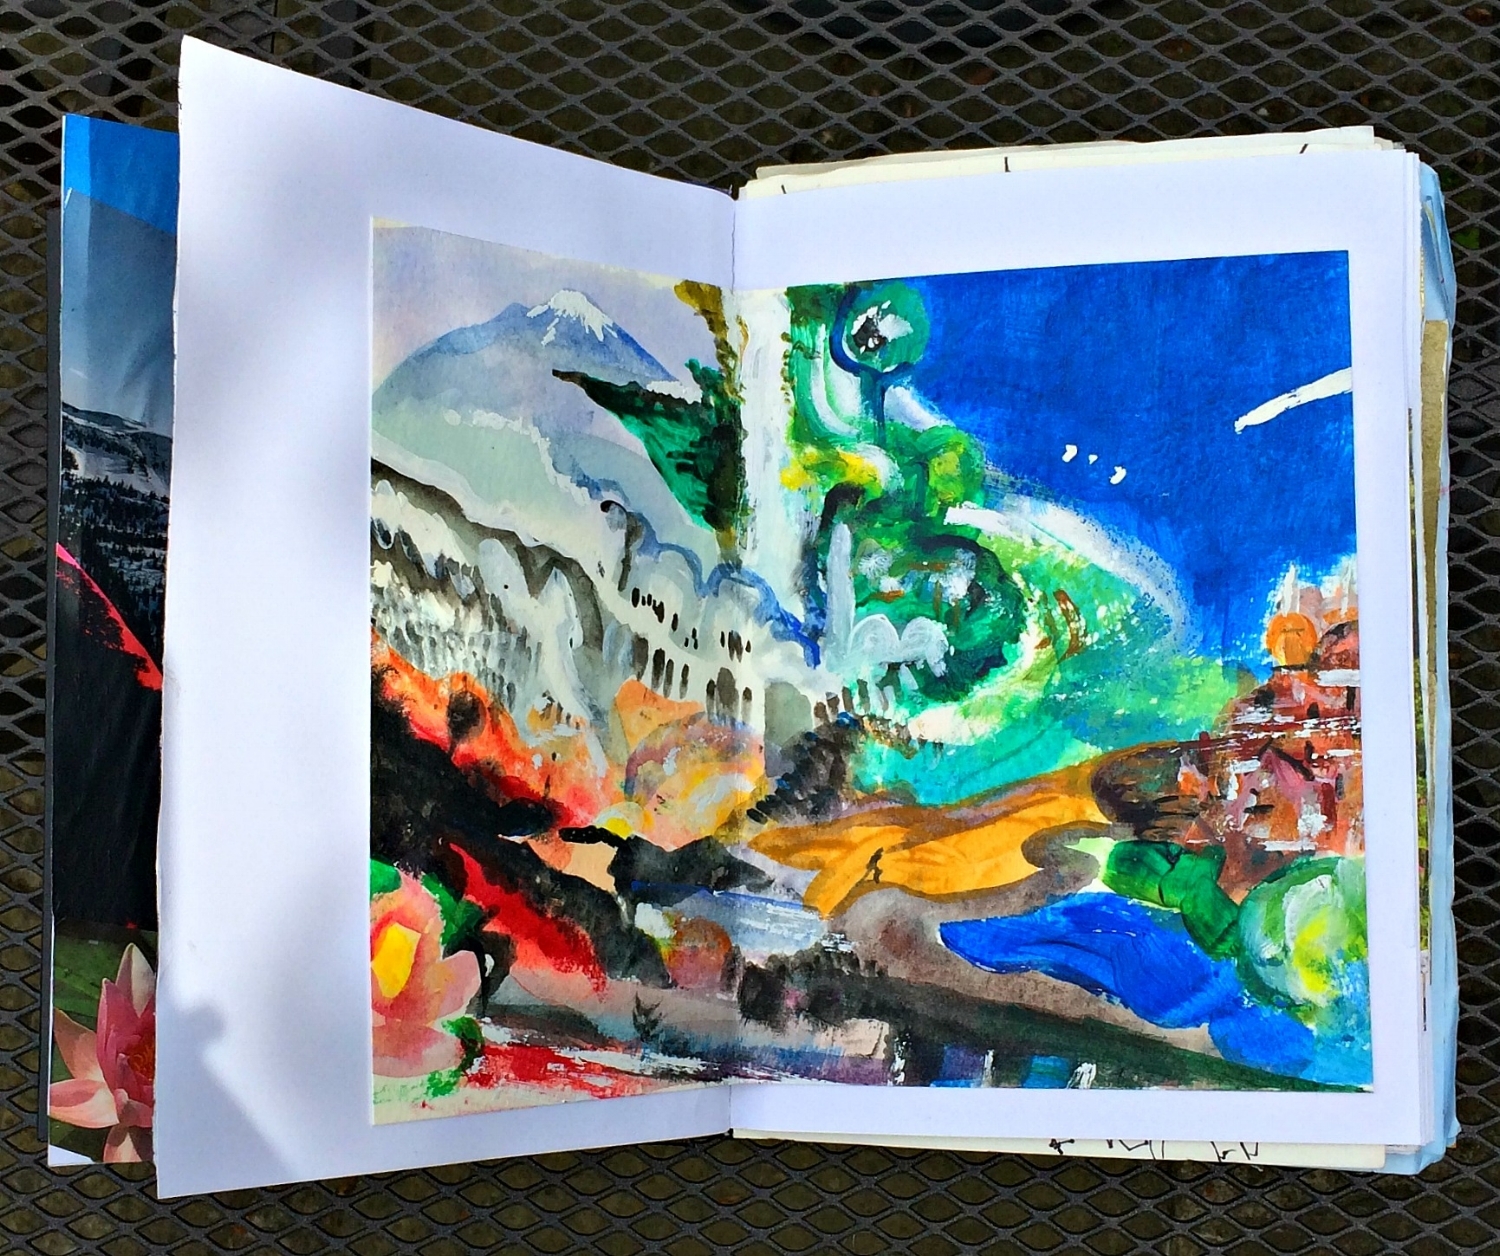 Sketchbook: dreamscape, acrylic